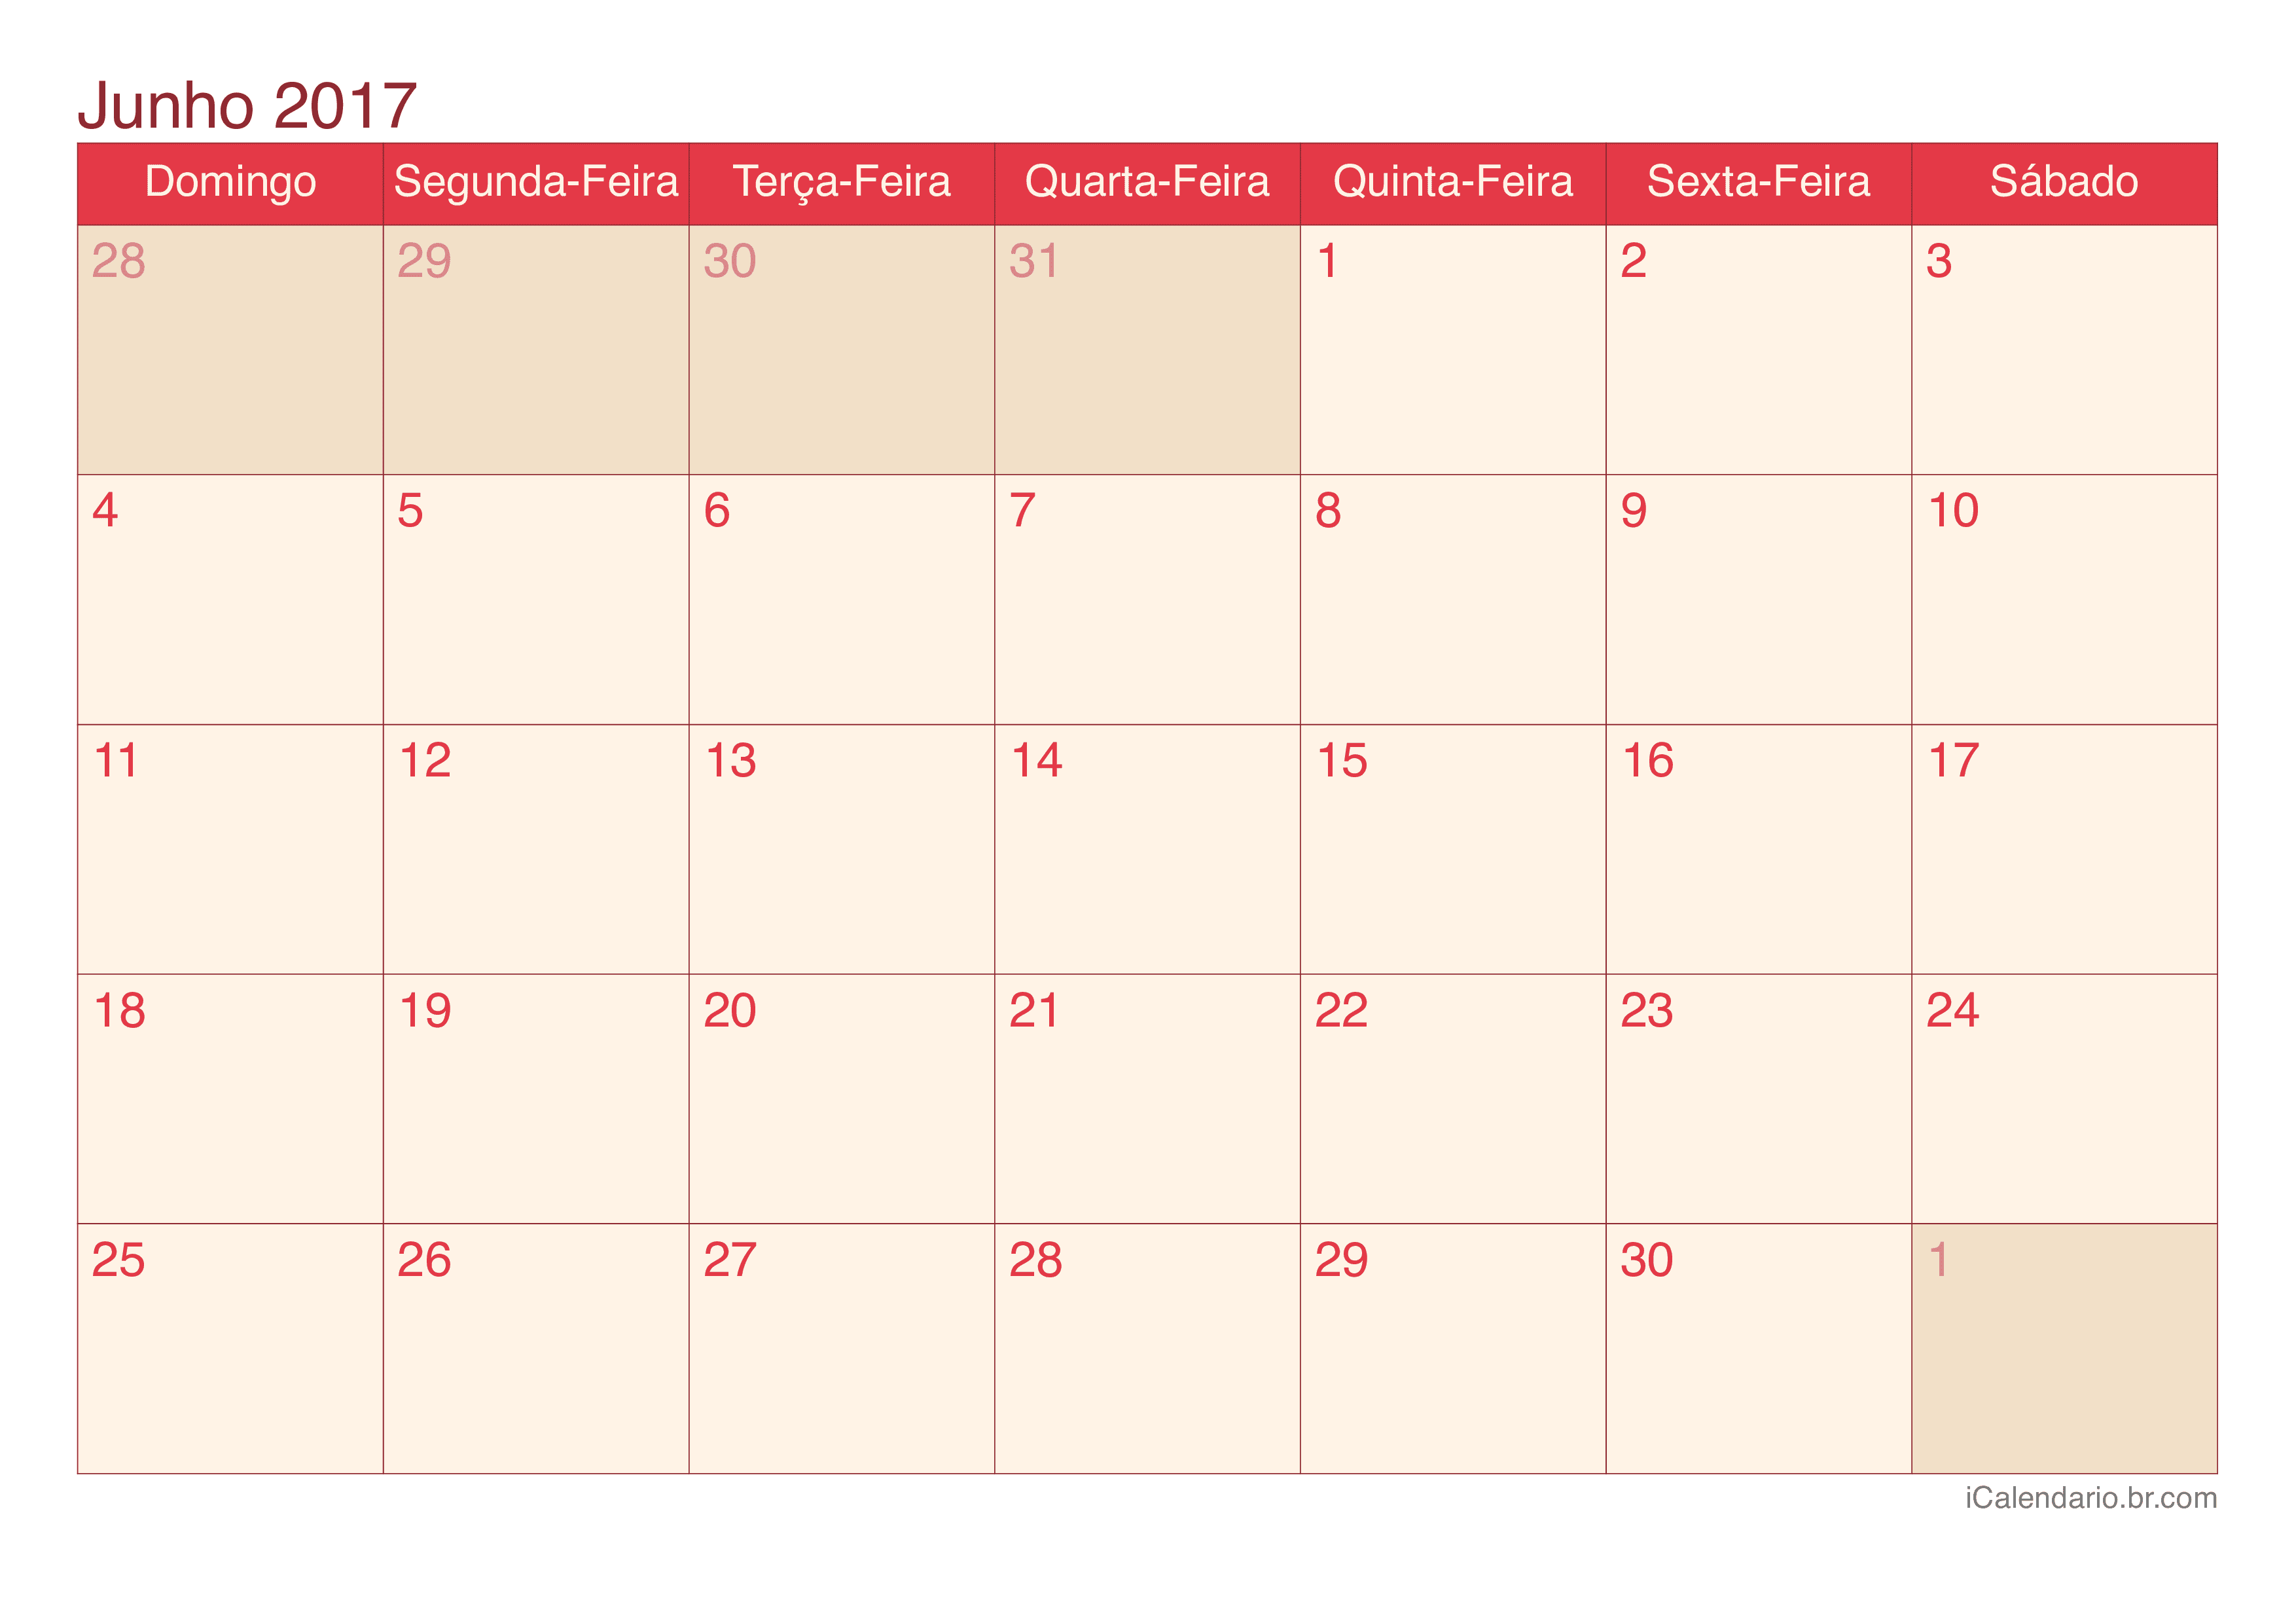 Calendário de junho 2017 - Cherry